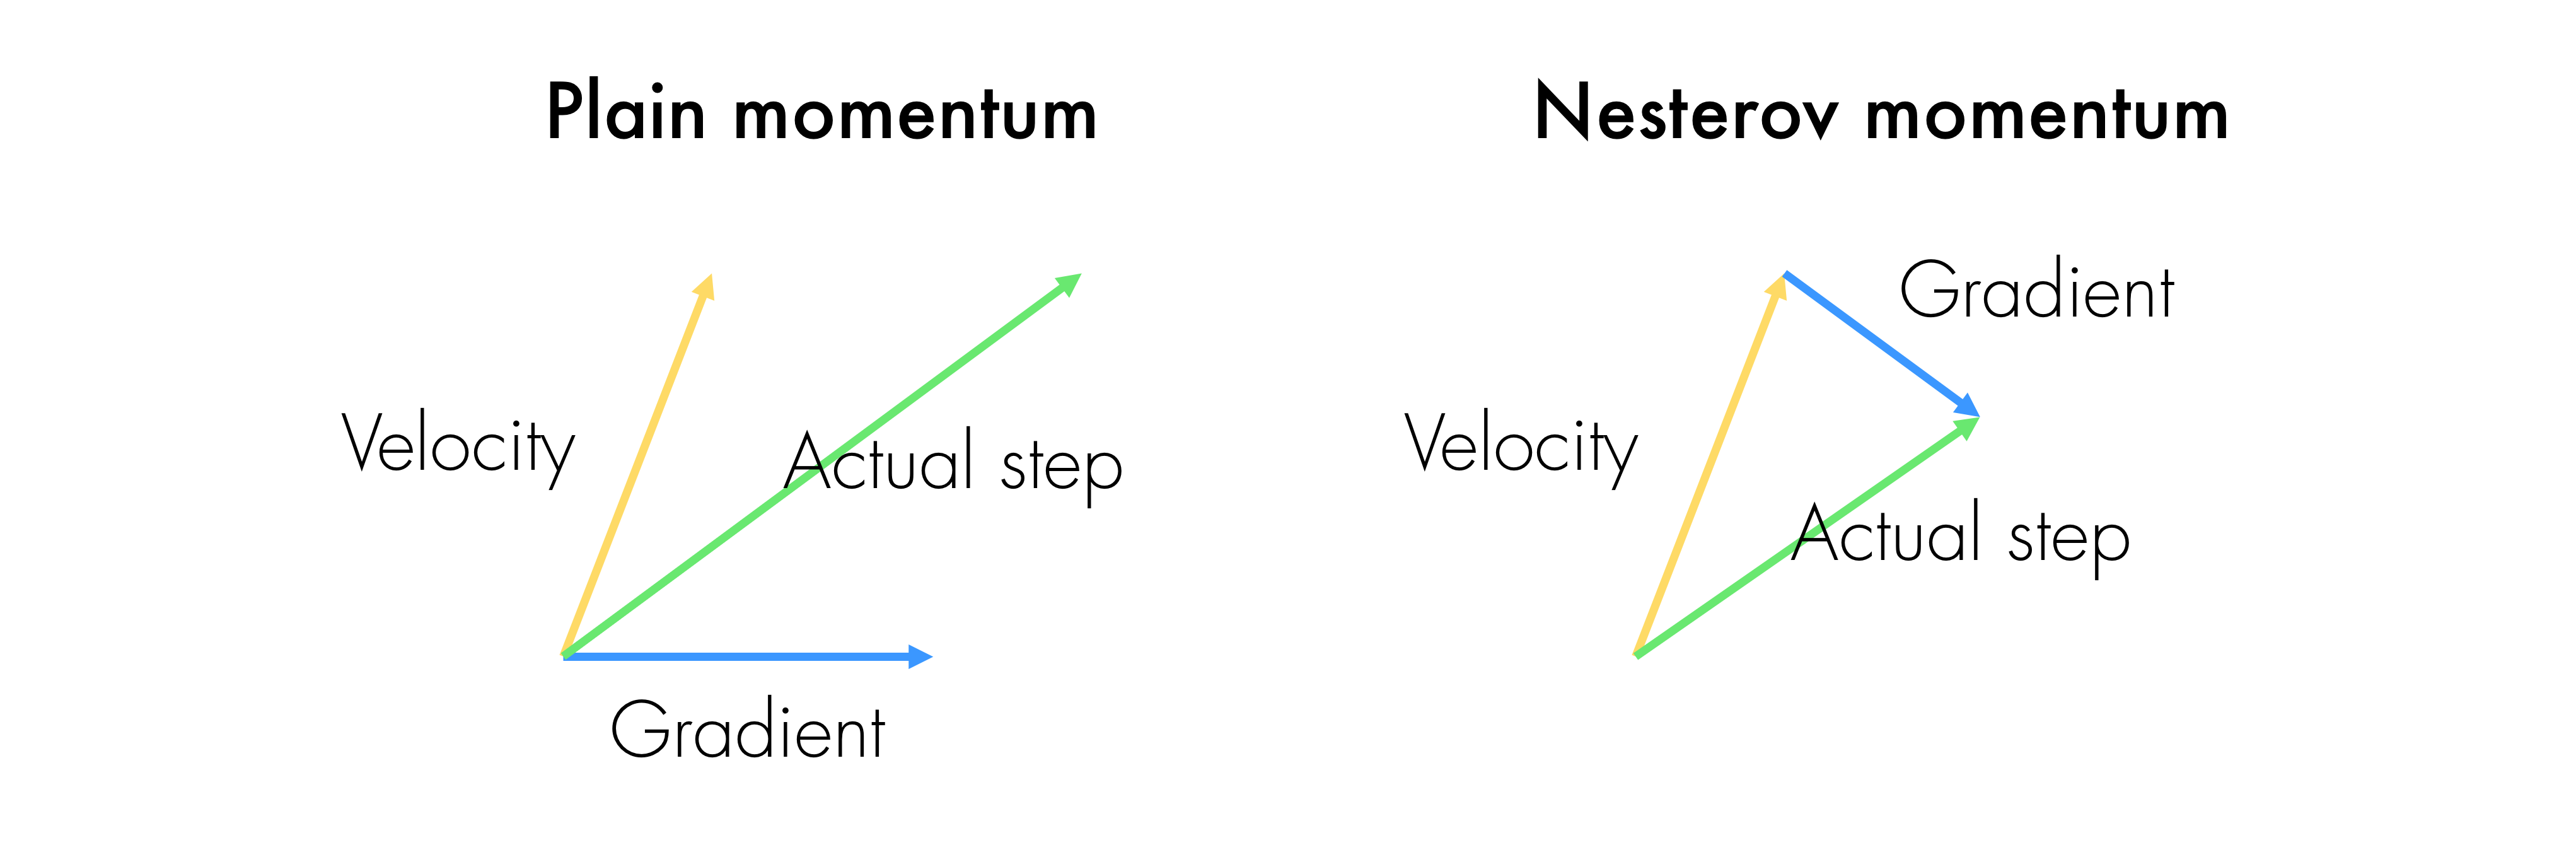 Comparison for Nesterov momentum